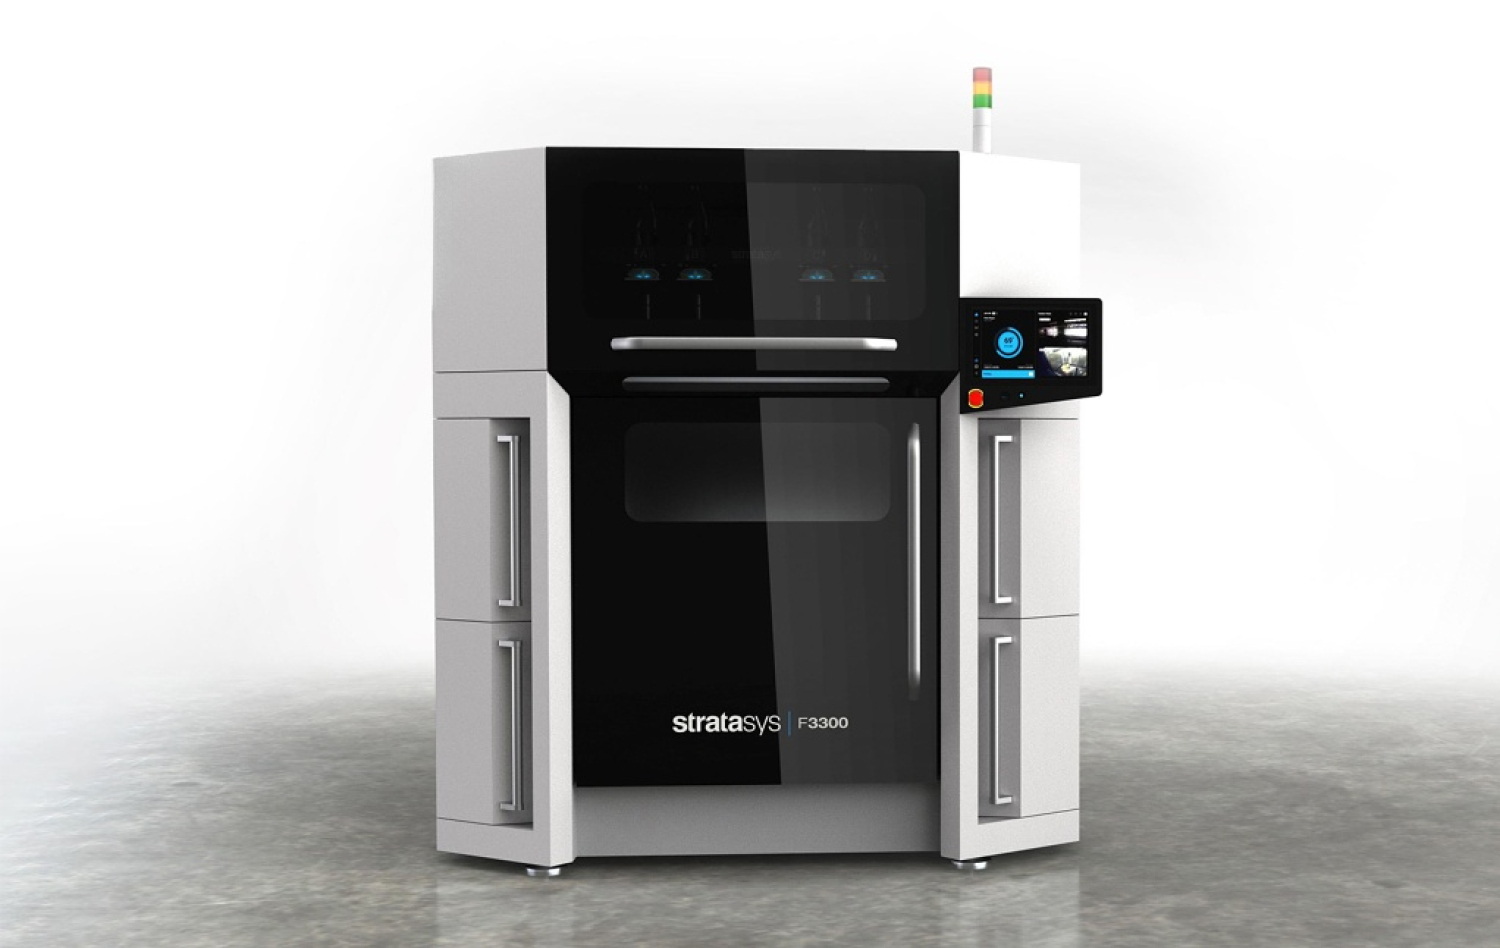 Distribtor 3D tlaiarn Stratasys, spolonos MCAE Systems predstavuje najsofistikovanejiu priemyseln 3D tlaiare na trhu